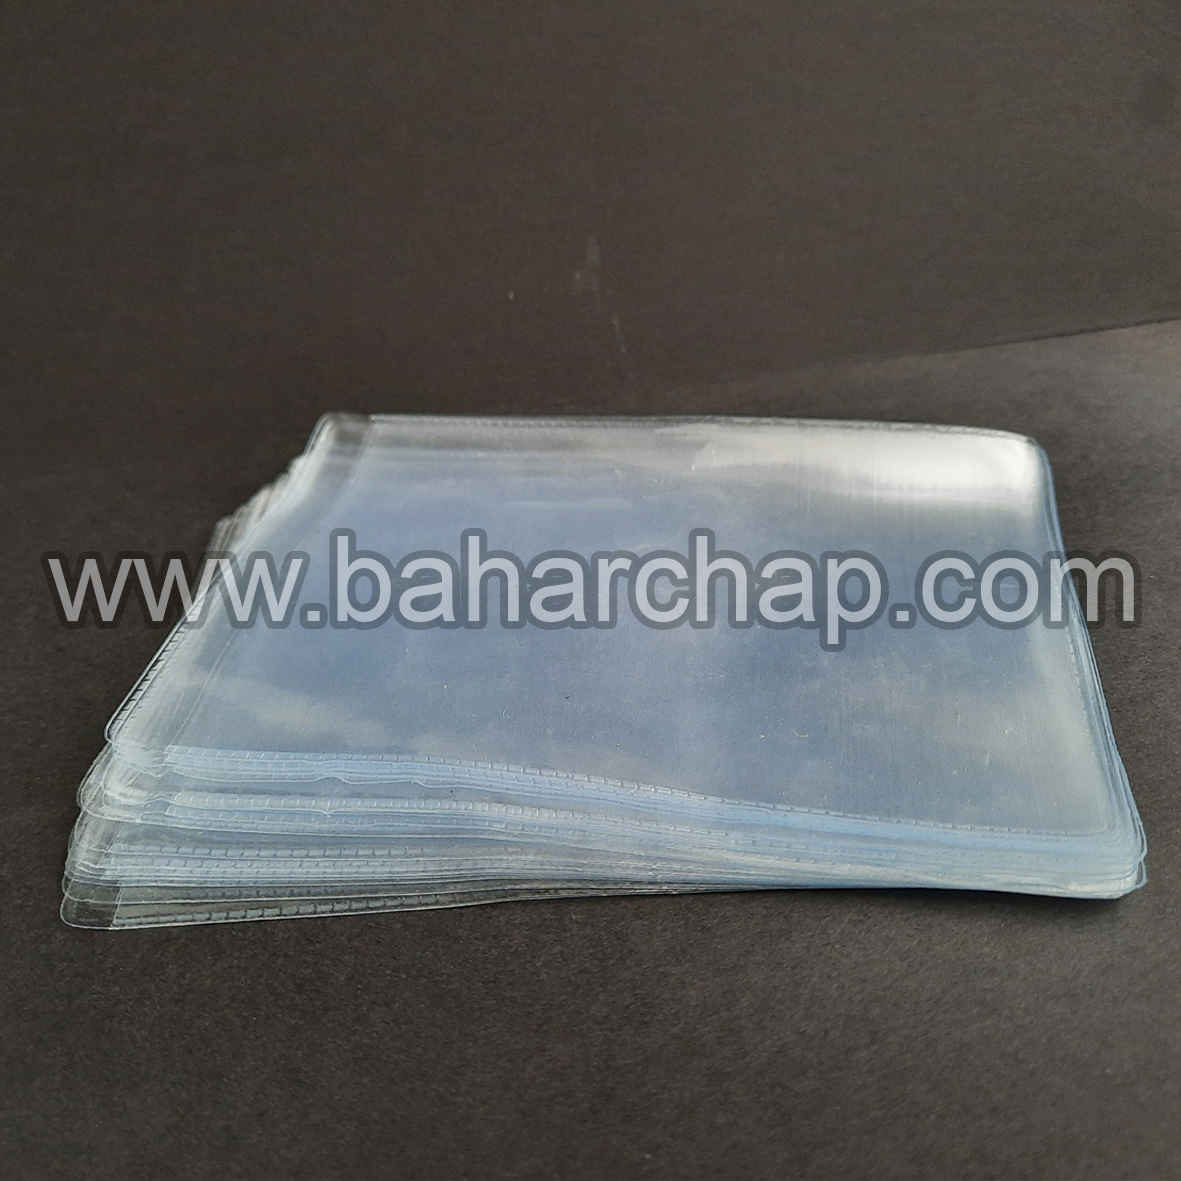 فروشگاه و خدمات اینترنتی بهارچاپ اصفهان-کاور کارت PVC سایز 10*7-pvc cards cover sheet 70*10